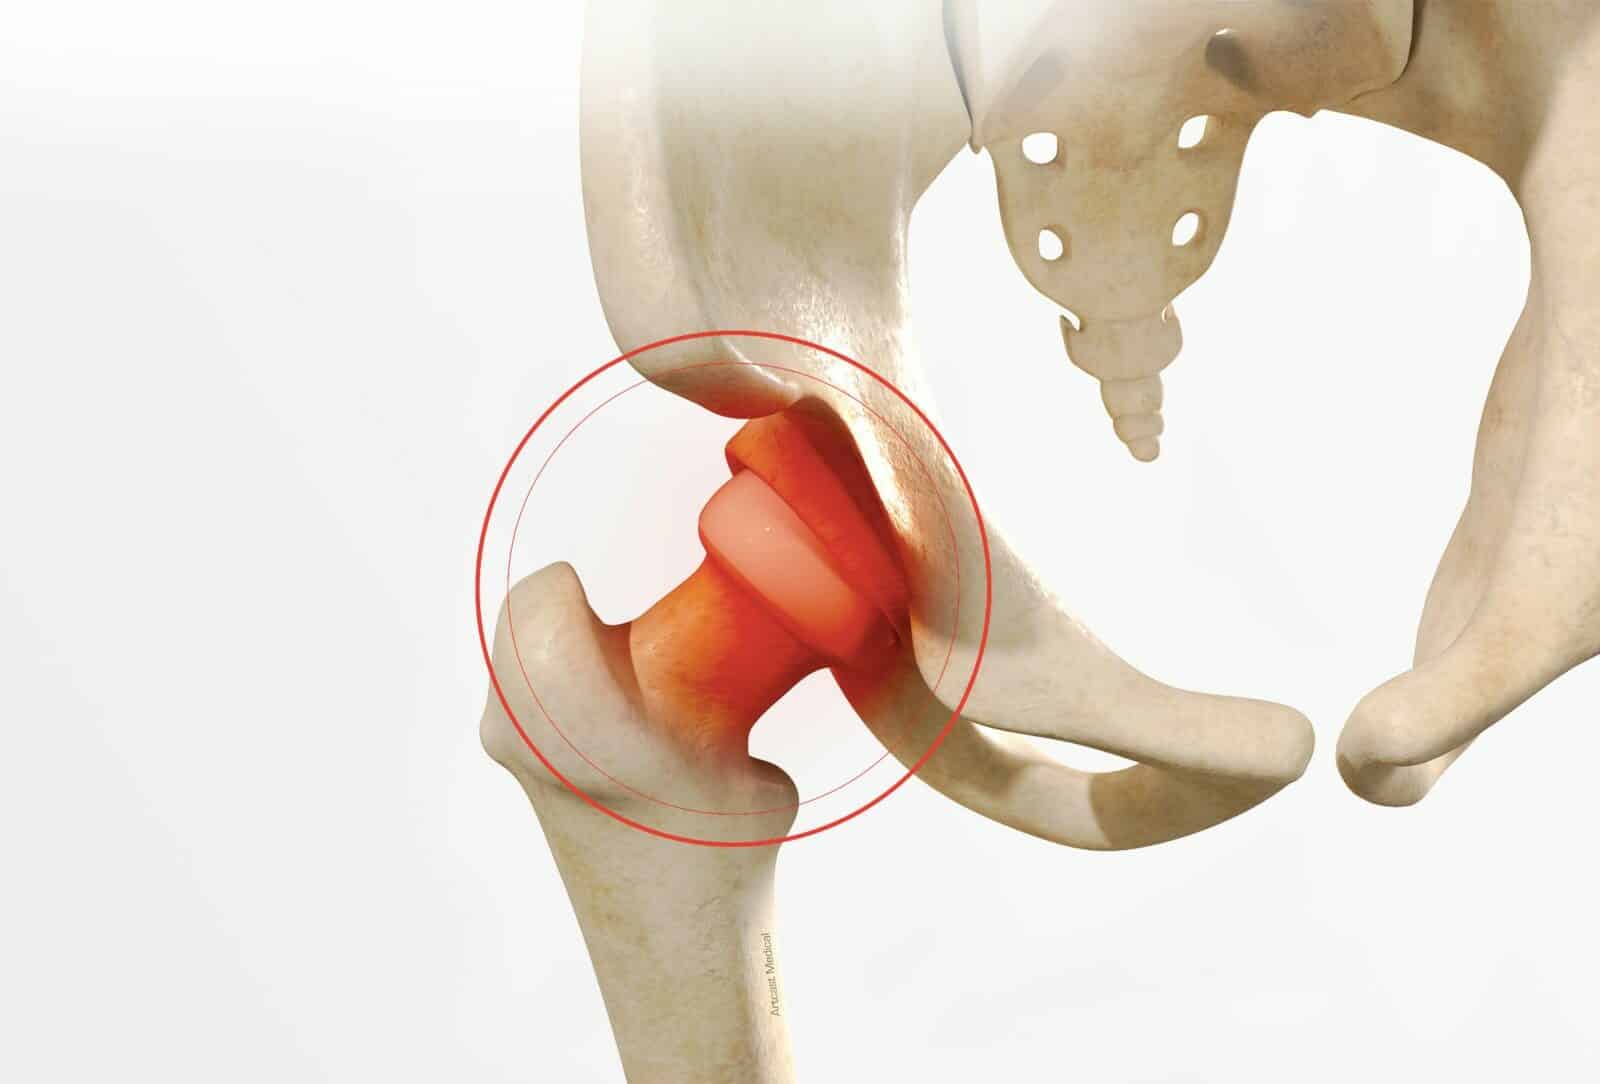 Traitement de l'Arthrolyse de hanche à Paris - dr Paillard, Chirurgien orthopédique